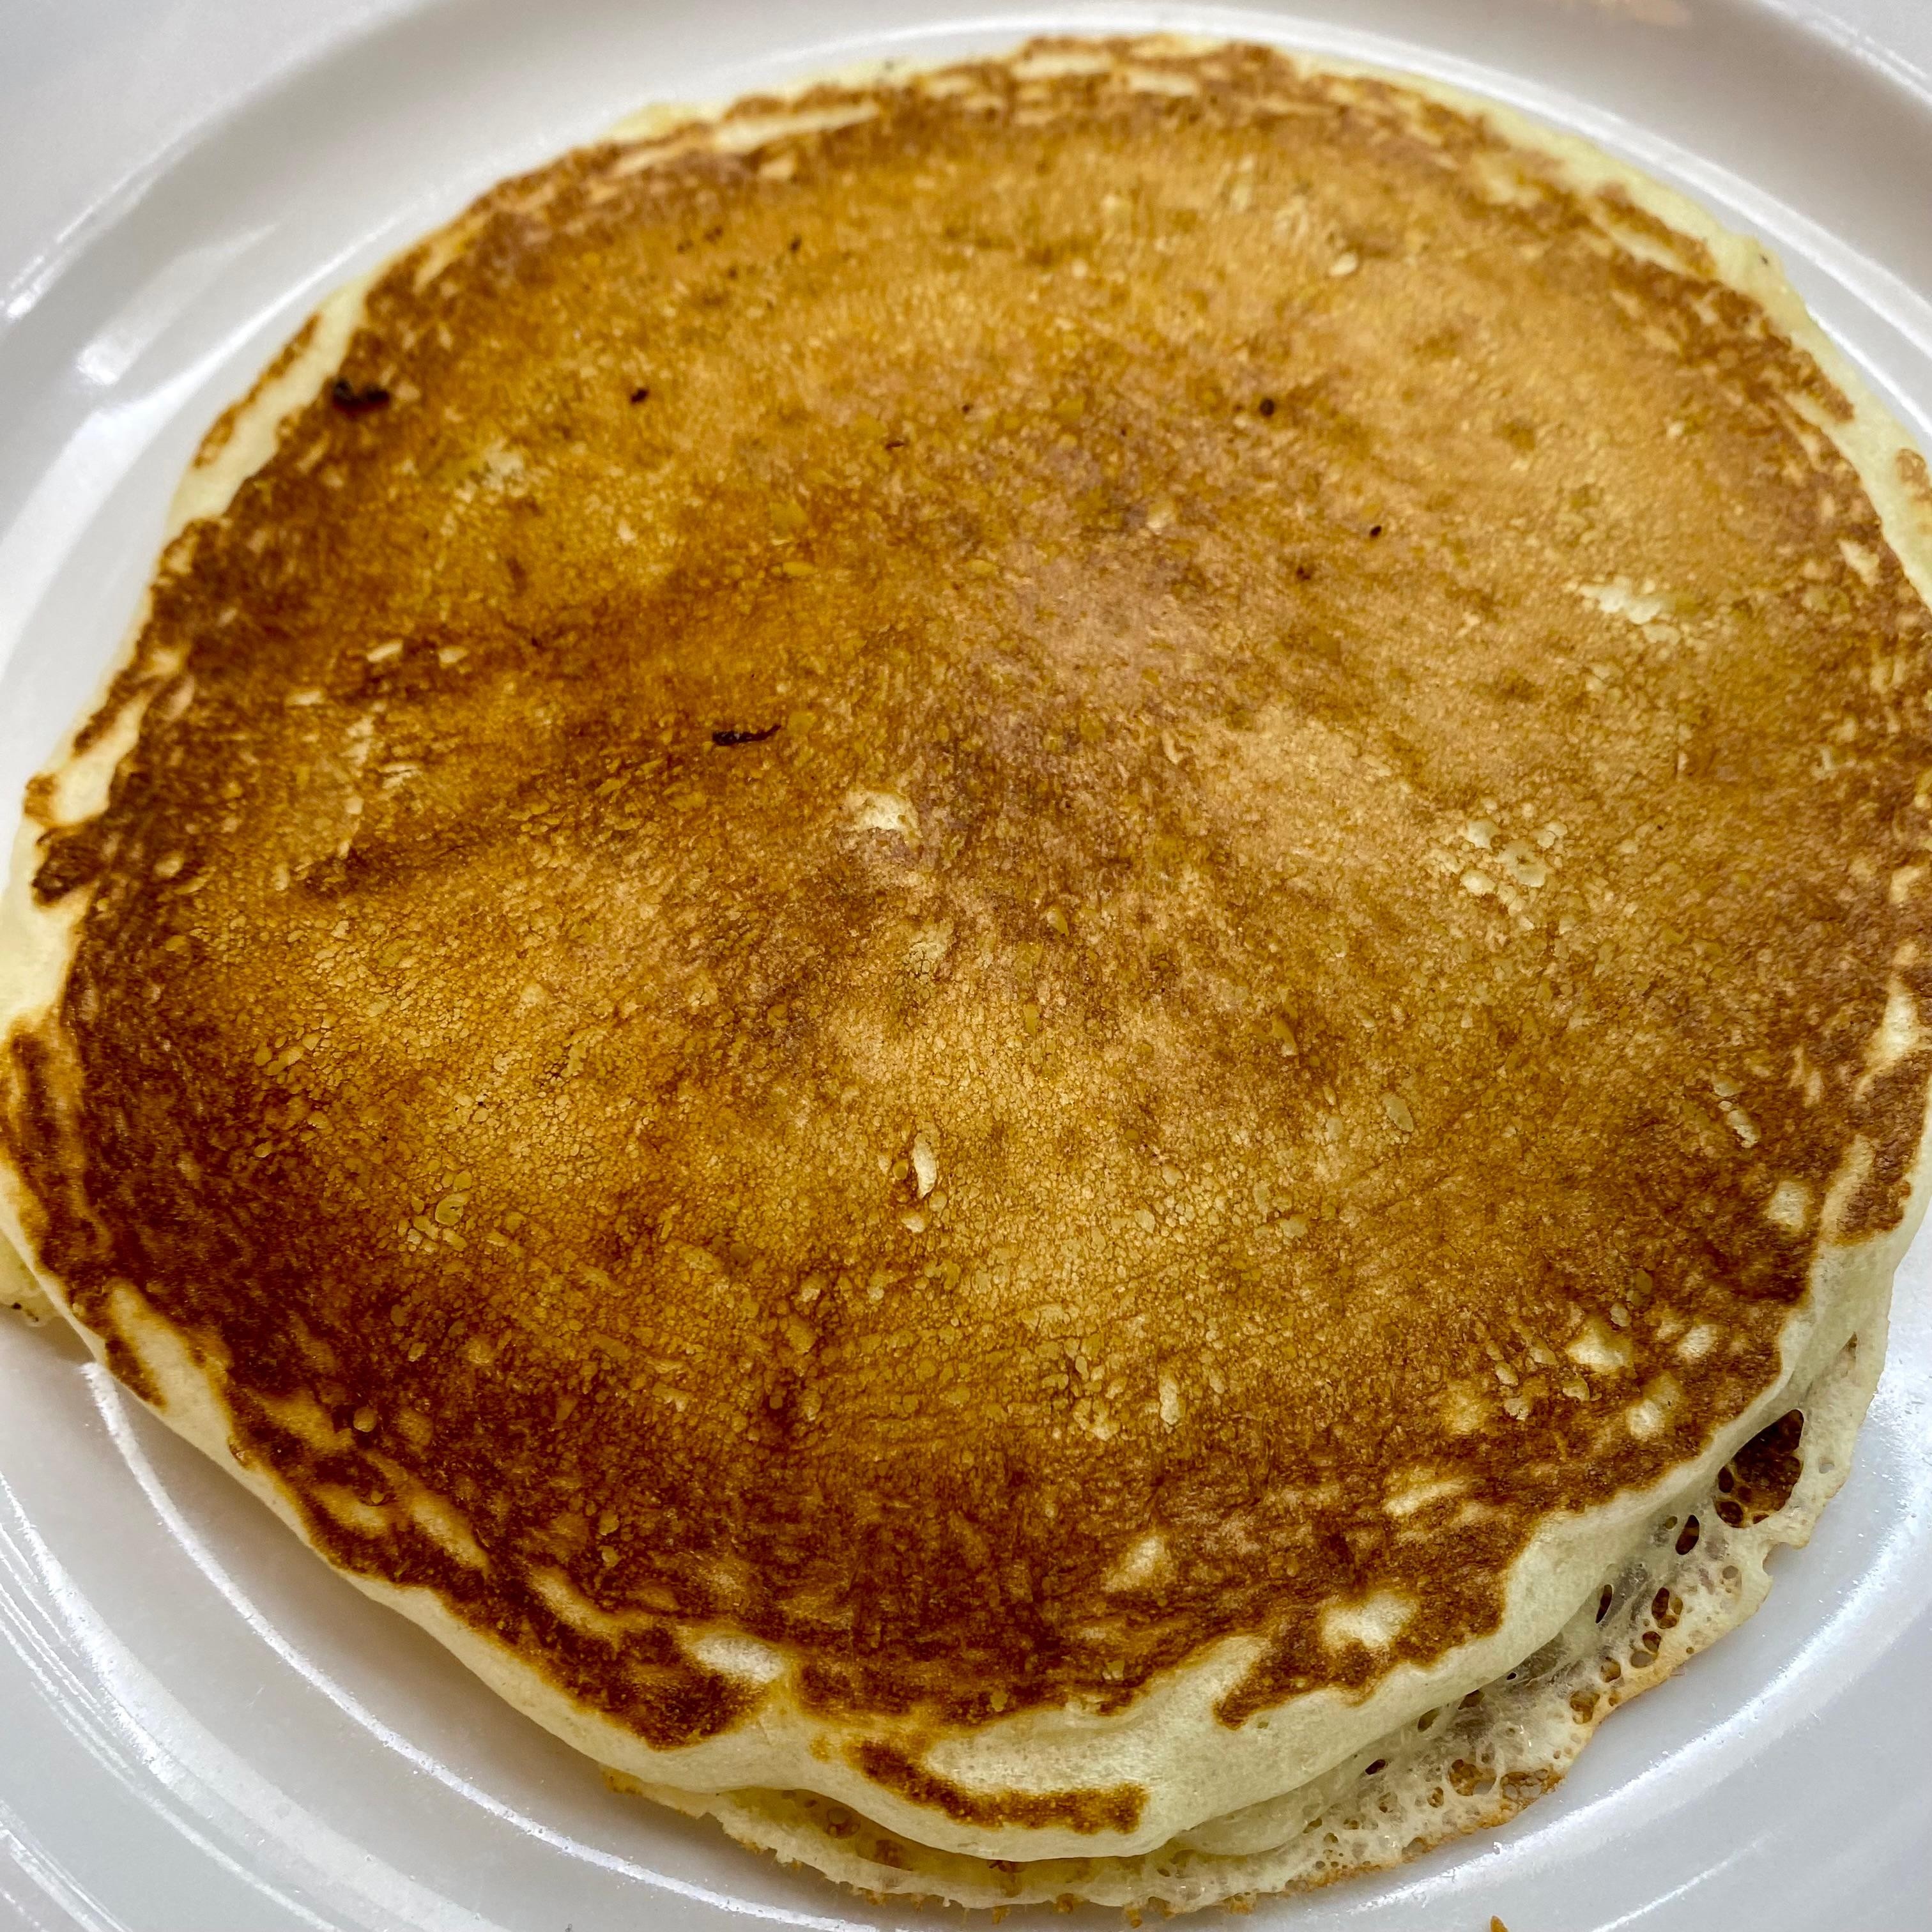 Single Pancake